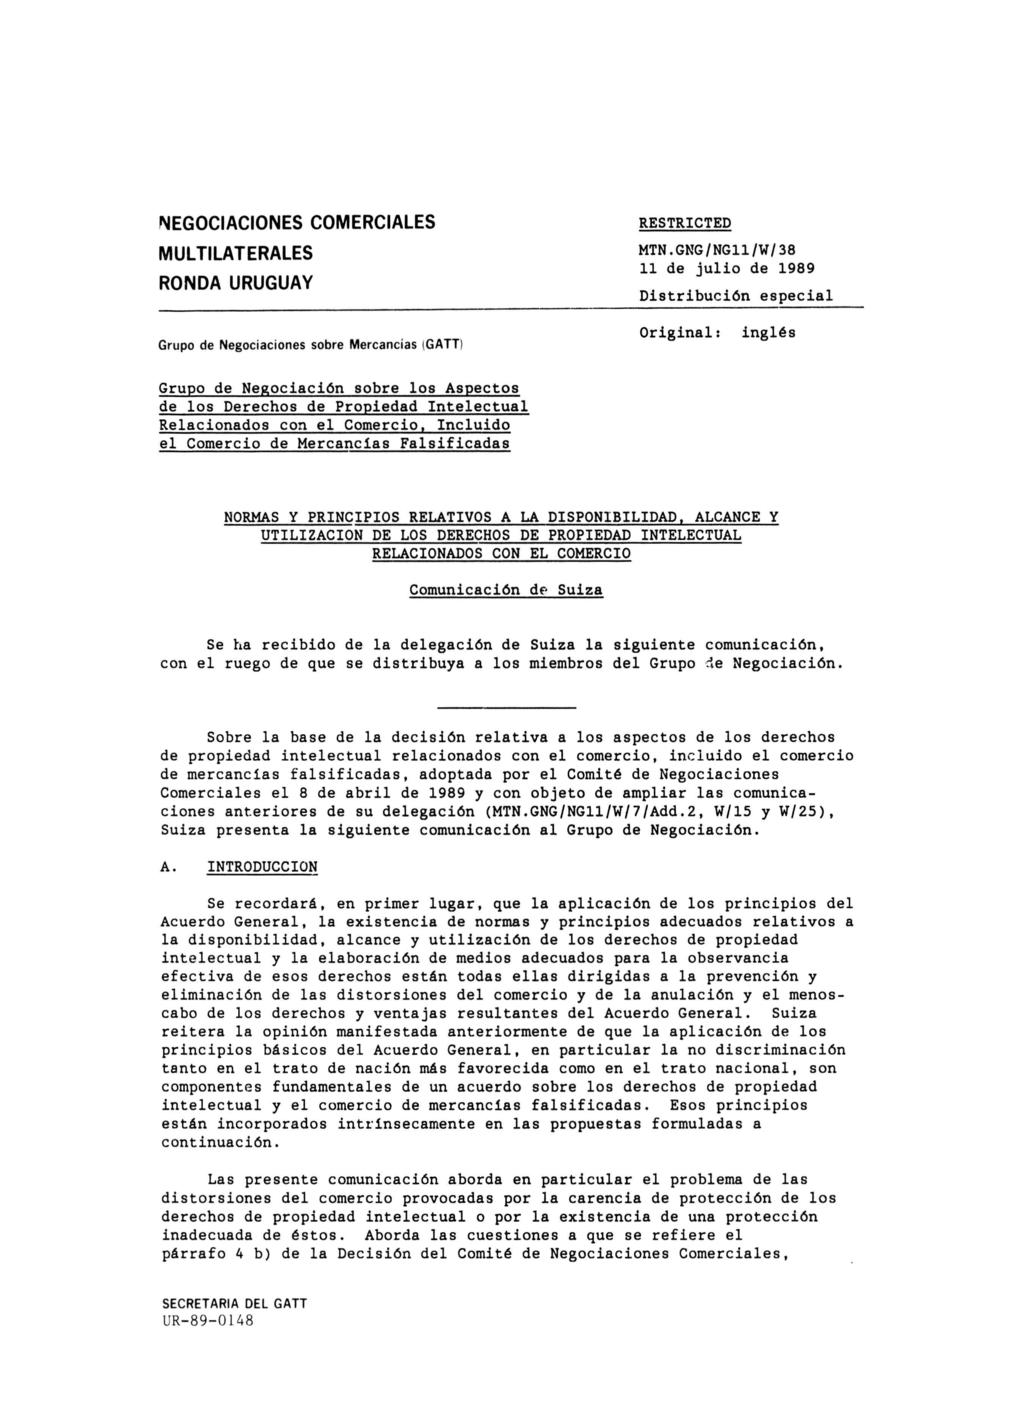 NEGOCIACIONES COMERCIALES MULTILATERALES RONDA URUGUAY RESTRICTED MTN.